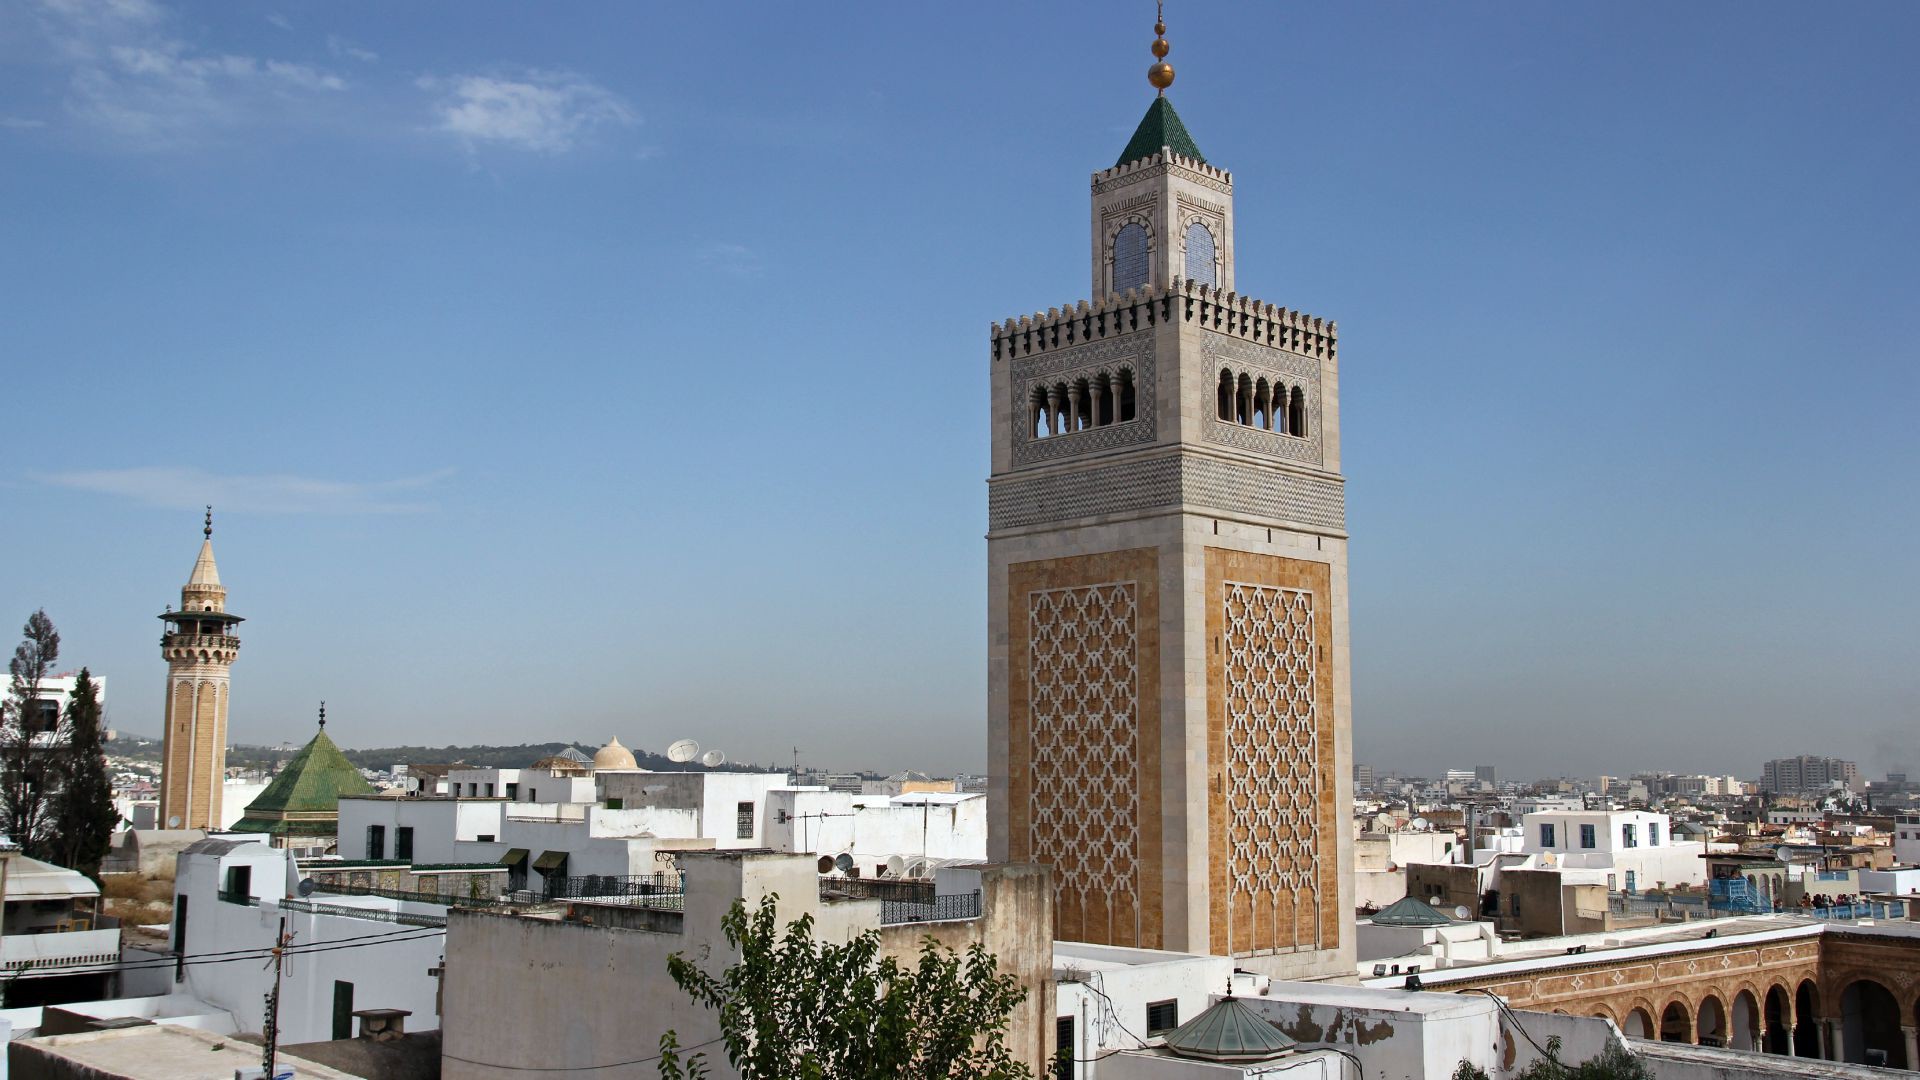 Tunis. Le débat se poursuit sur la frontière entre politique et religion en Tunisie. (Photo: Fickr/grolli77/CC BY-SA 2.0)